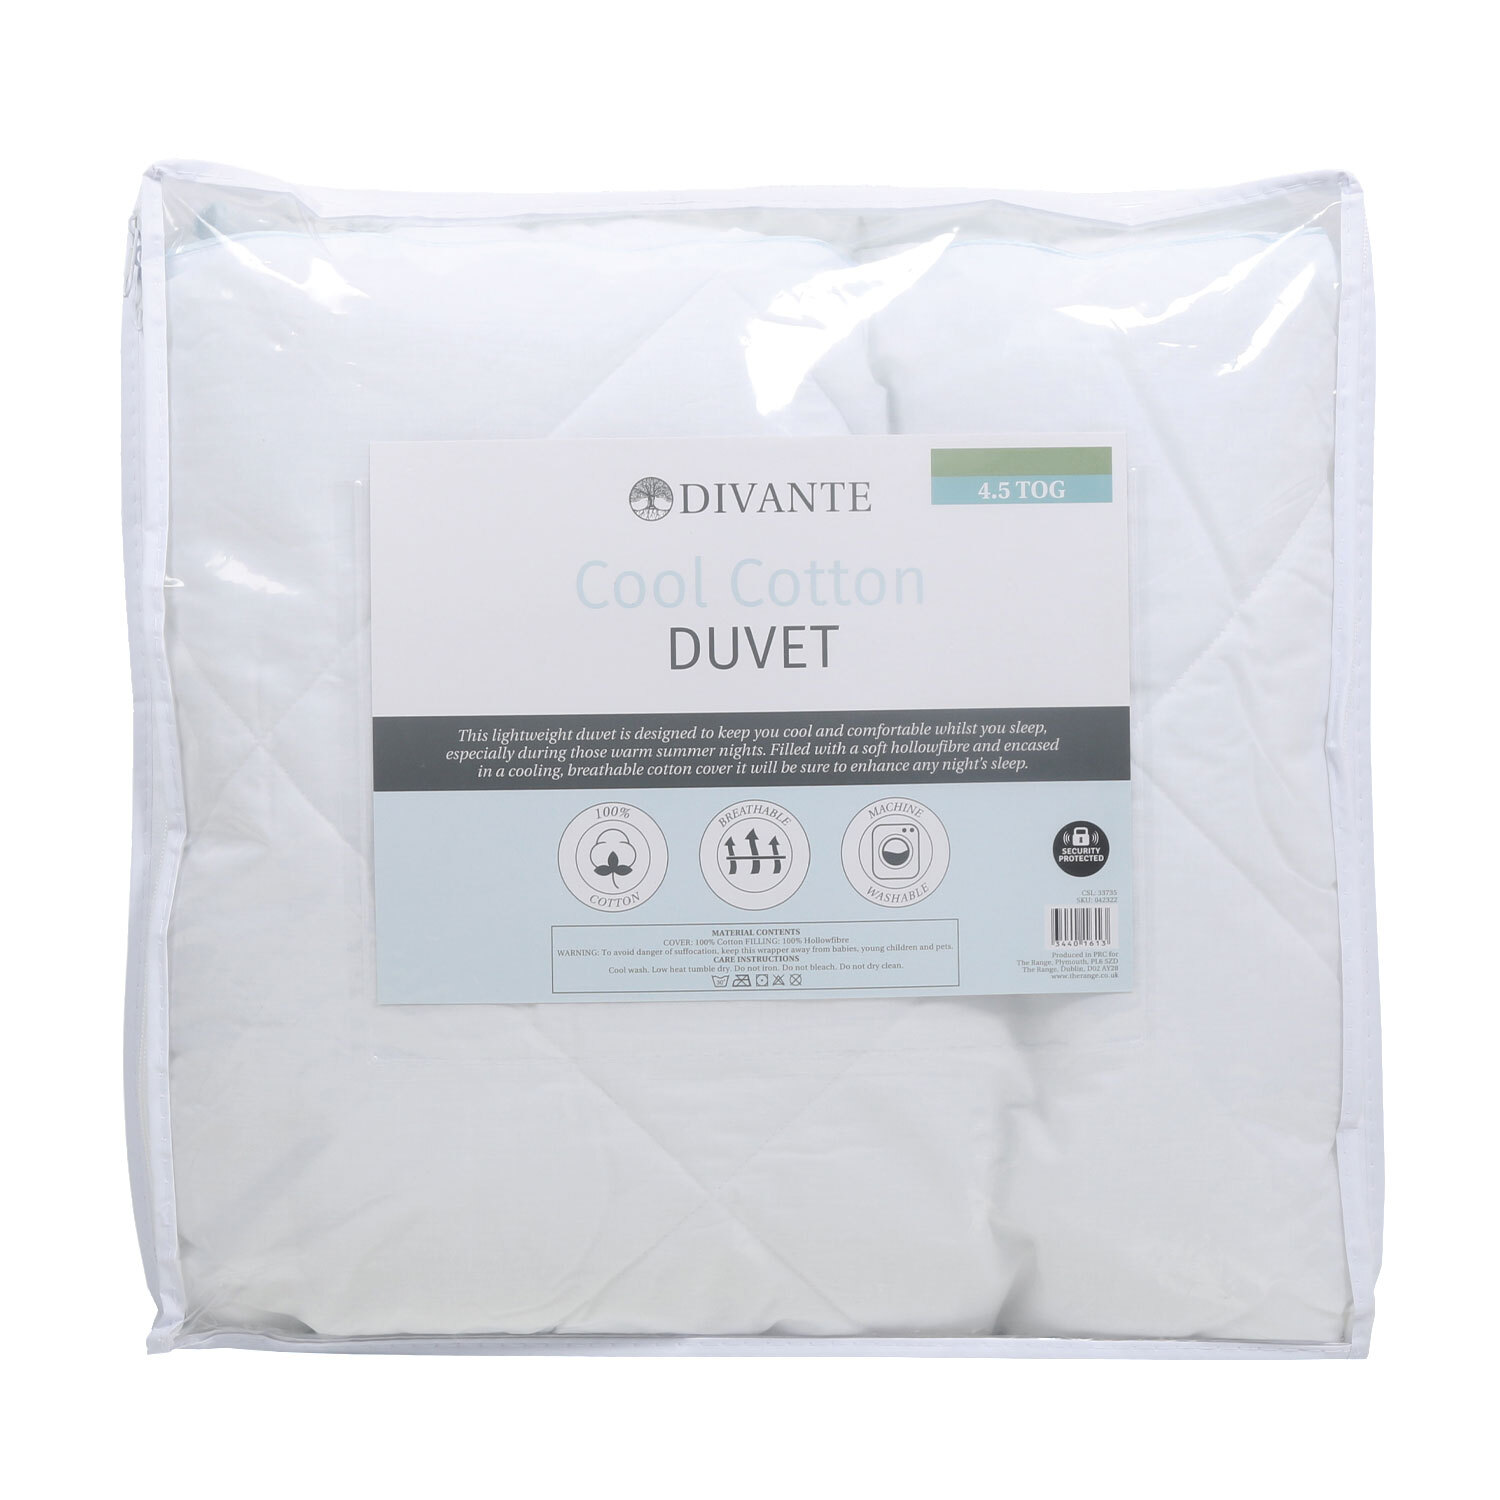 Divante Double White Cotton Cool Duvet 4.5 Tog Image 2